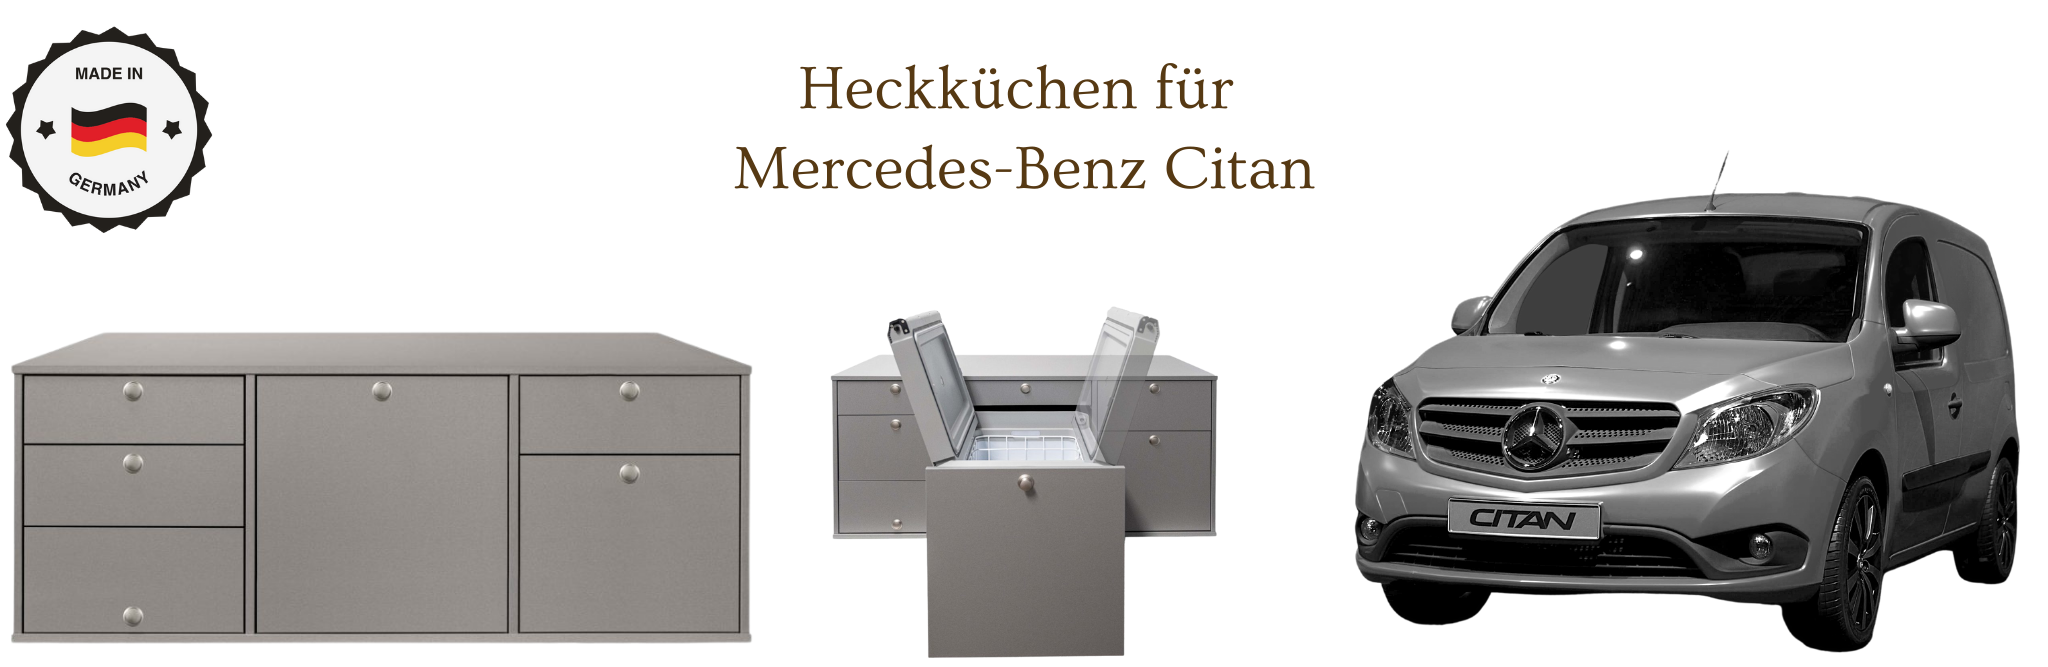 Heckküchen für Mercedes-Benz Citan